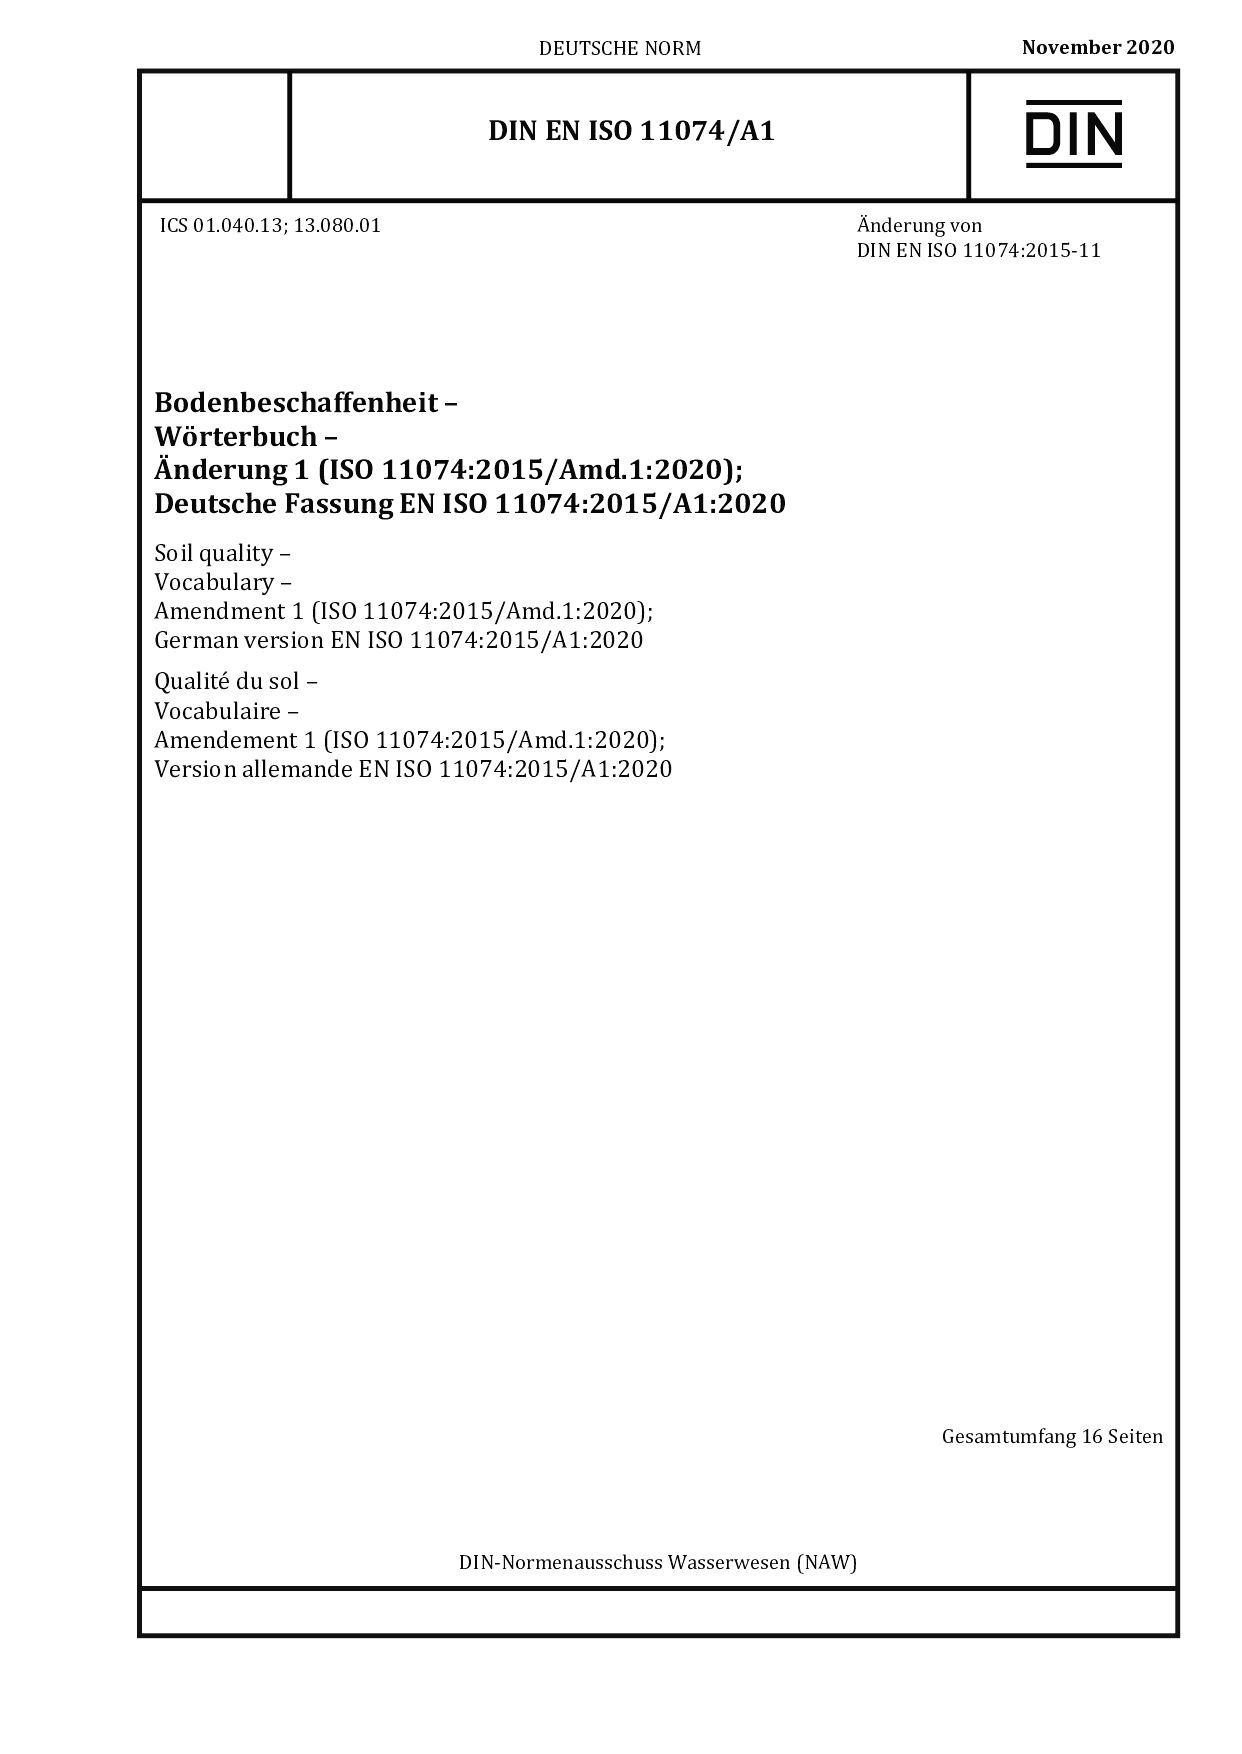 DIN EN ISO 11074/A1:2020封面图